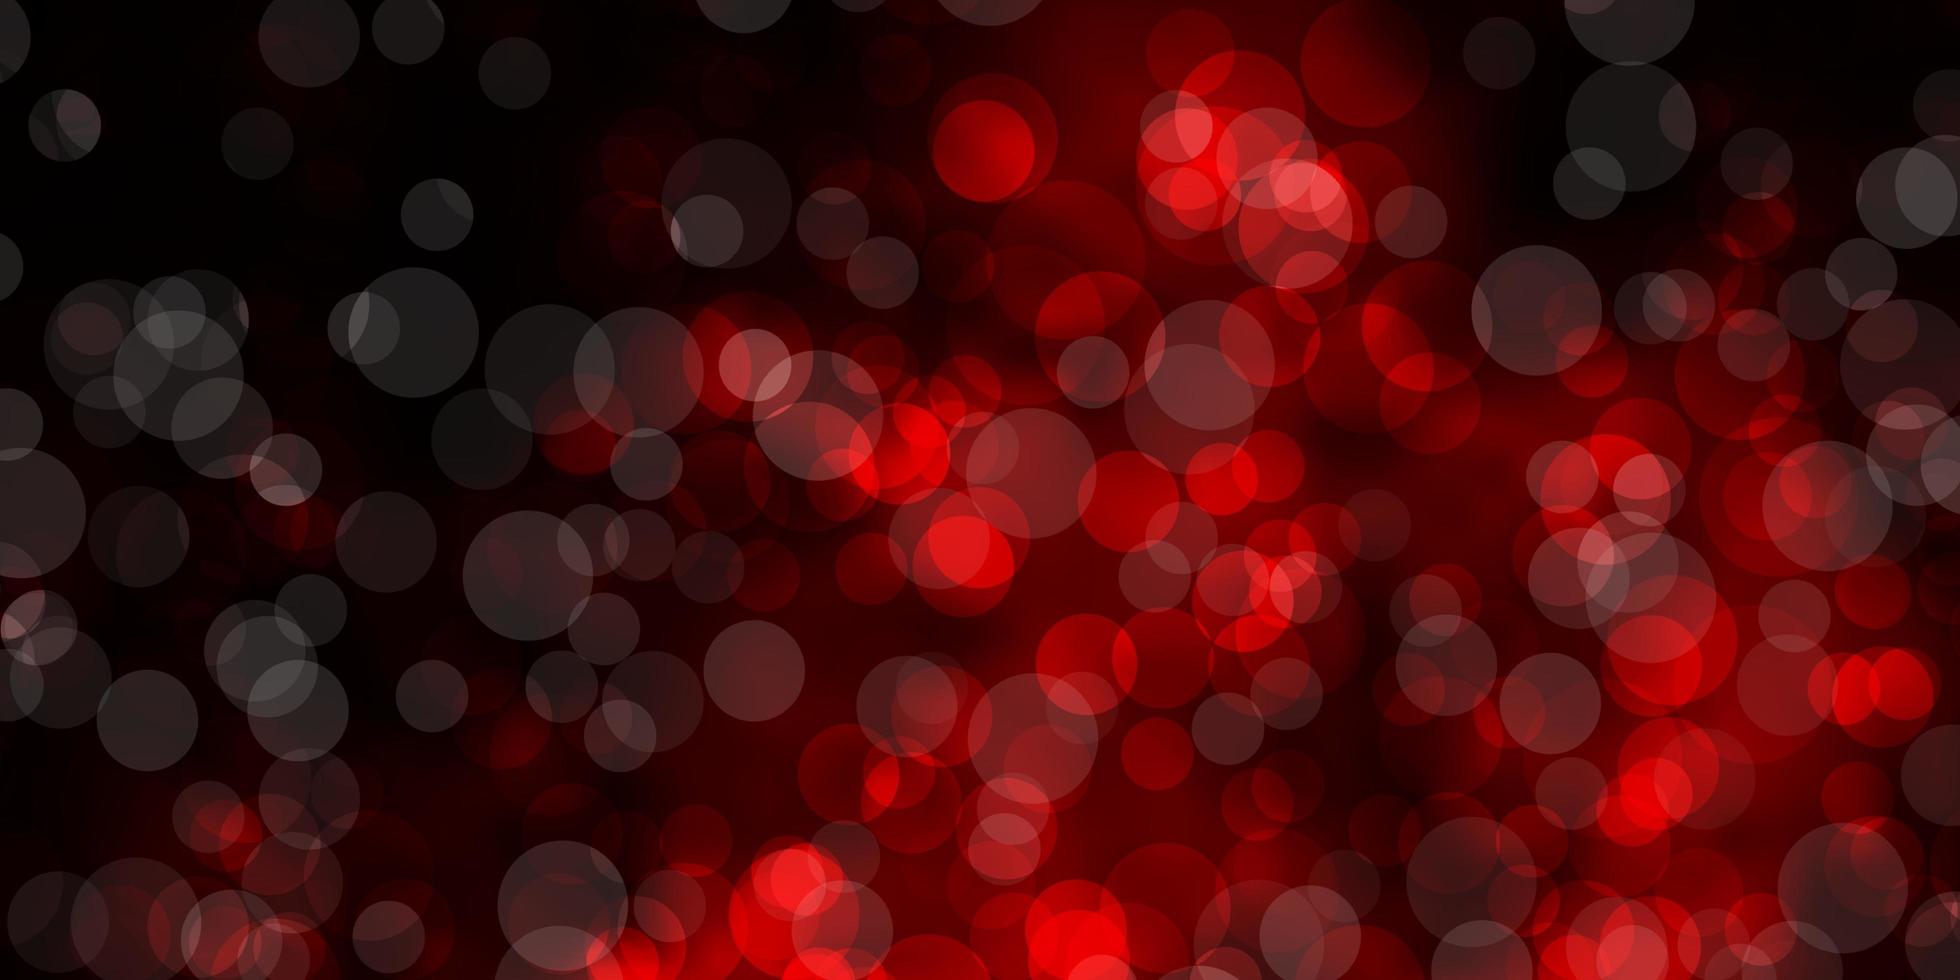 modello vettoriale rosso scuro con sfere.